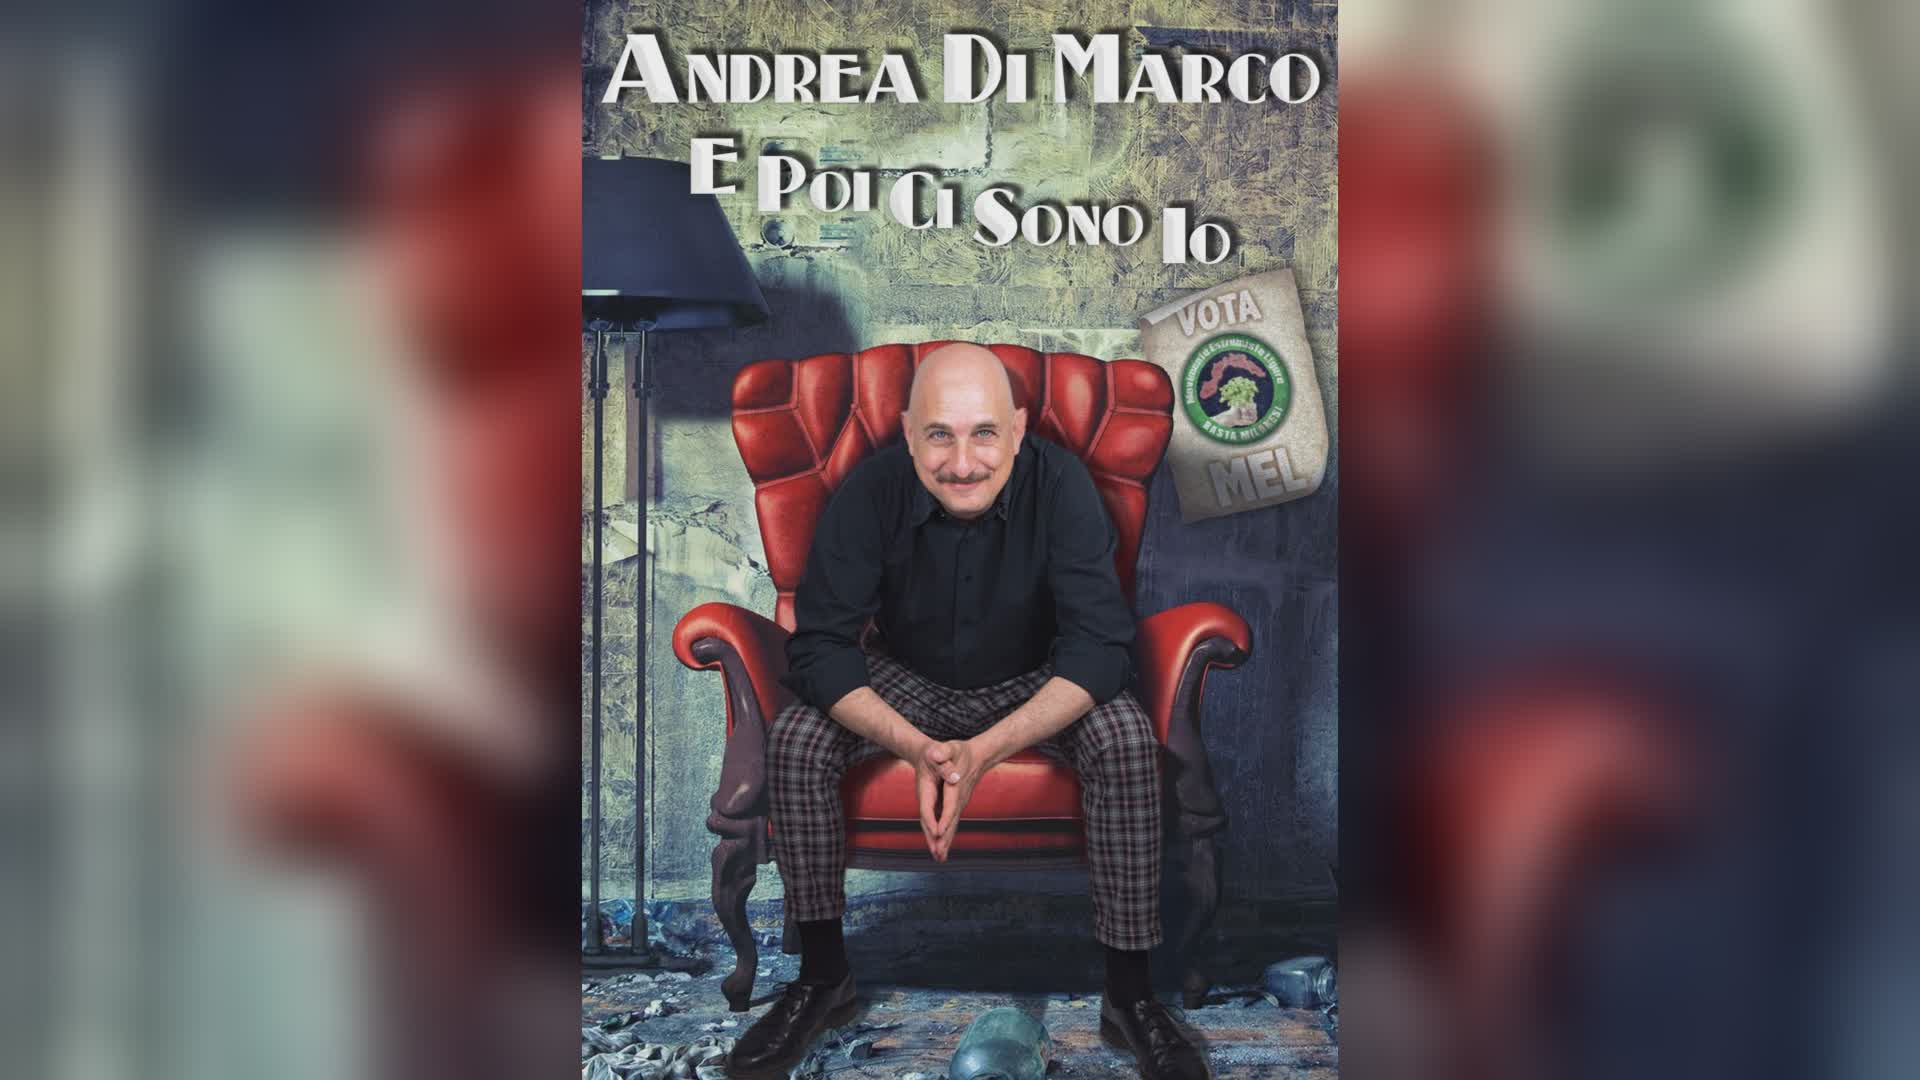 Arenzano, Andrea Di Marco in scena al Teatro Sipario Strappato con il nuovo spettacolo "E poi ci sono io"